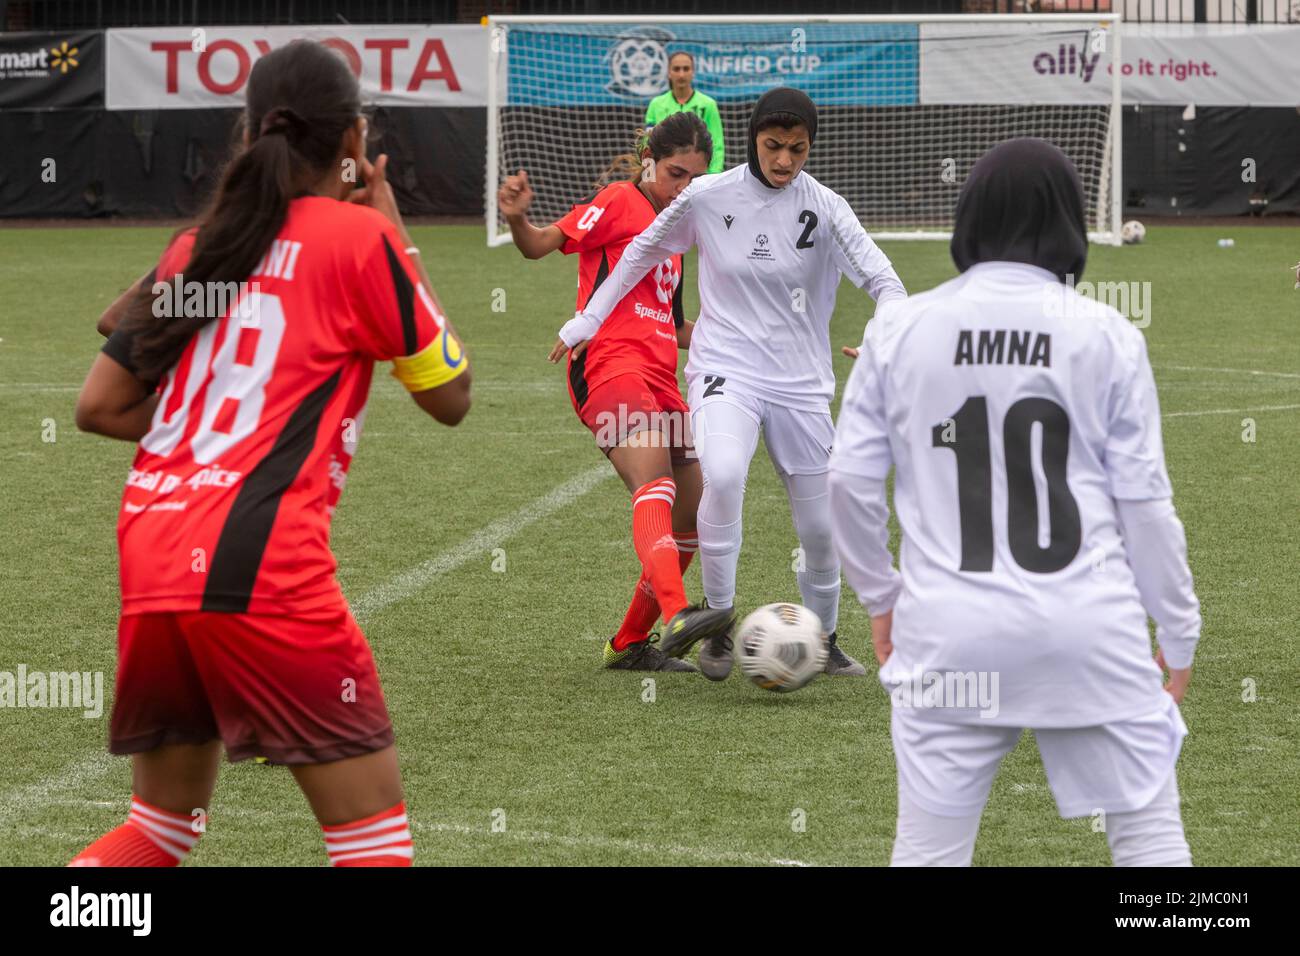 Detroit, Michigan - Los equipos femeninos de los Emiratos Árabes Unidos y Sri Lanka se reúnen en el torneo de fútbol Special Olympics Unified Cup. Foto de stock